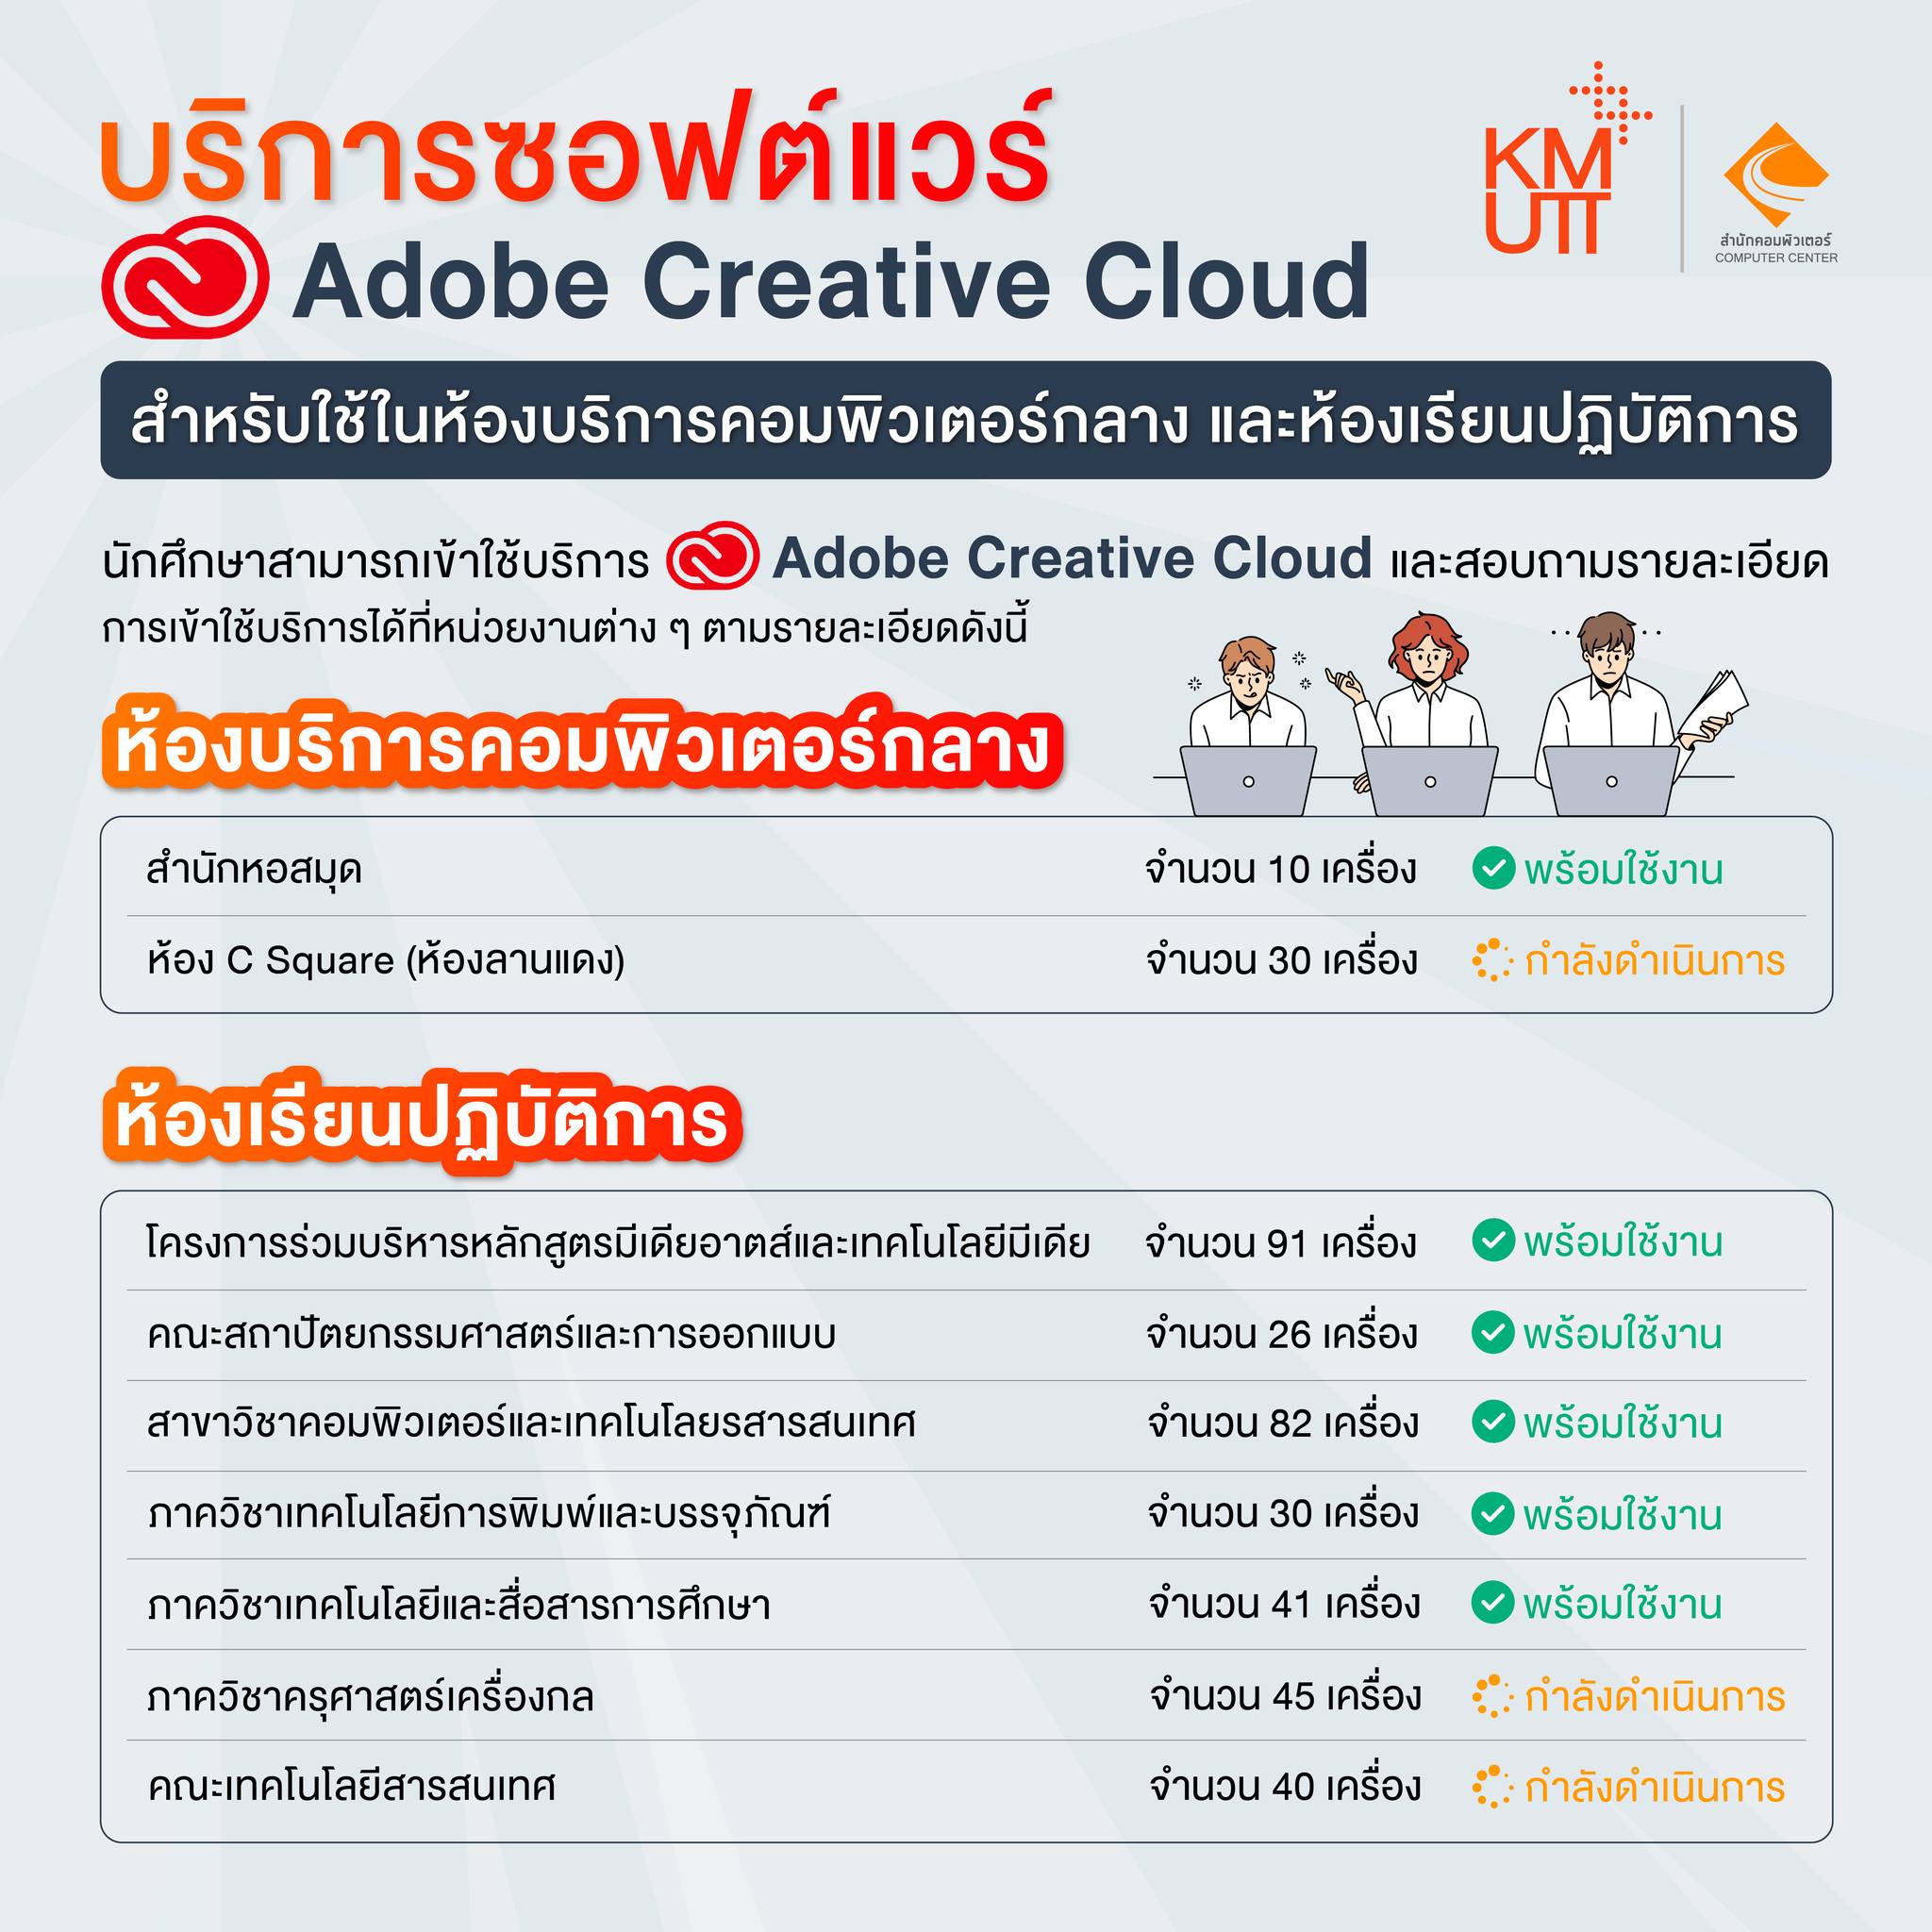 การให้บริการซอฟต์แวร์ Adobe Creative Cloud สำหรับใช้ในห้องบริการคอมพิวเตอร์กลาง (สำนักคอมพิวเตอร์ และสำนักหอสมุด) และห้องเรียนปฏิบัติการ 